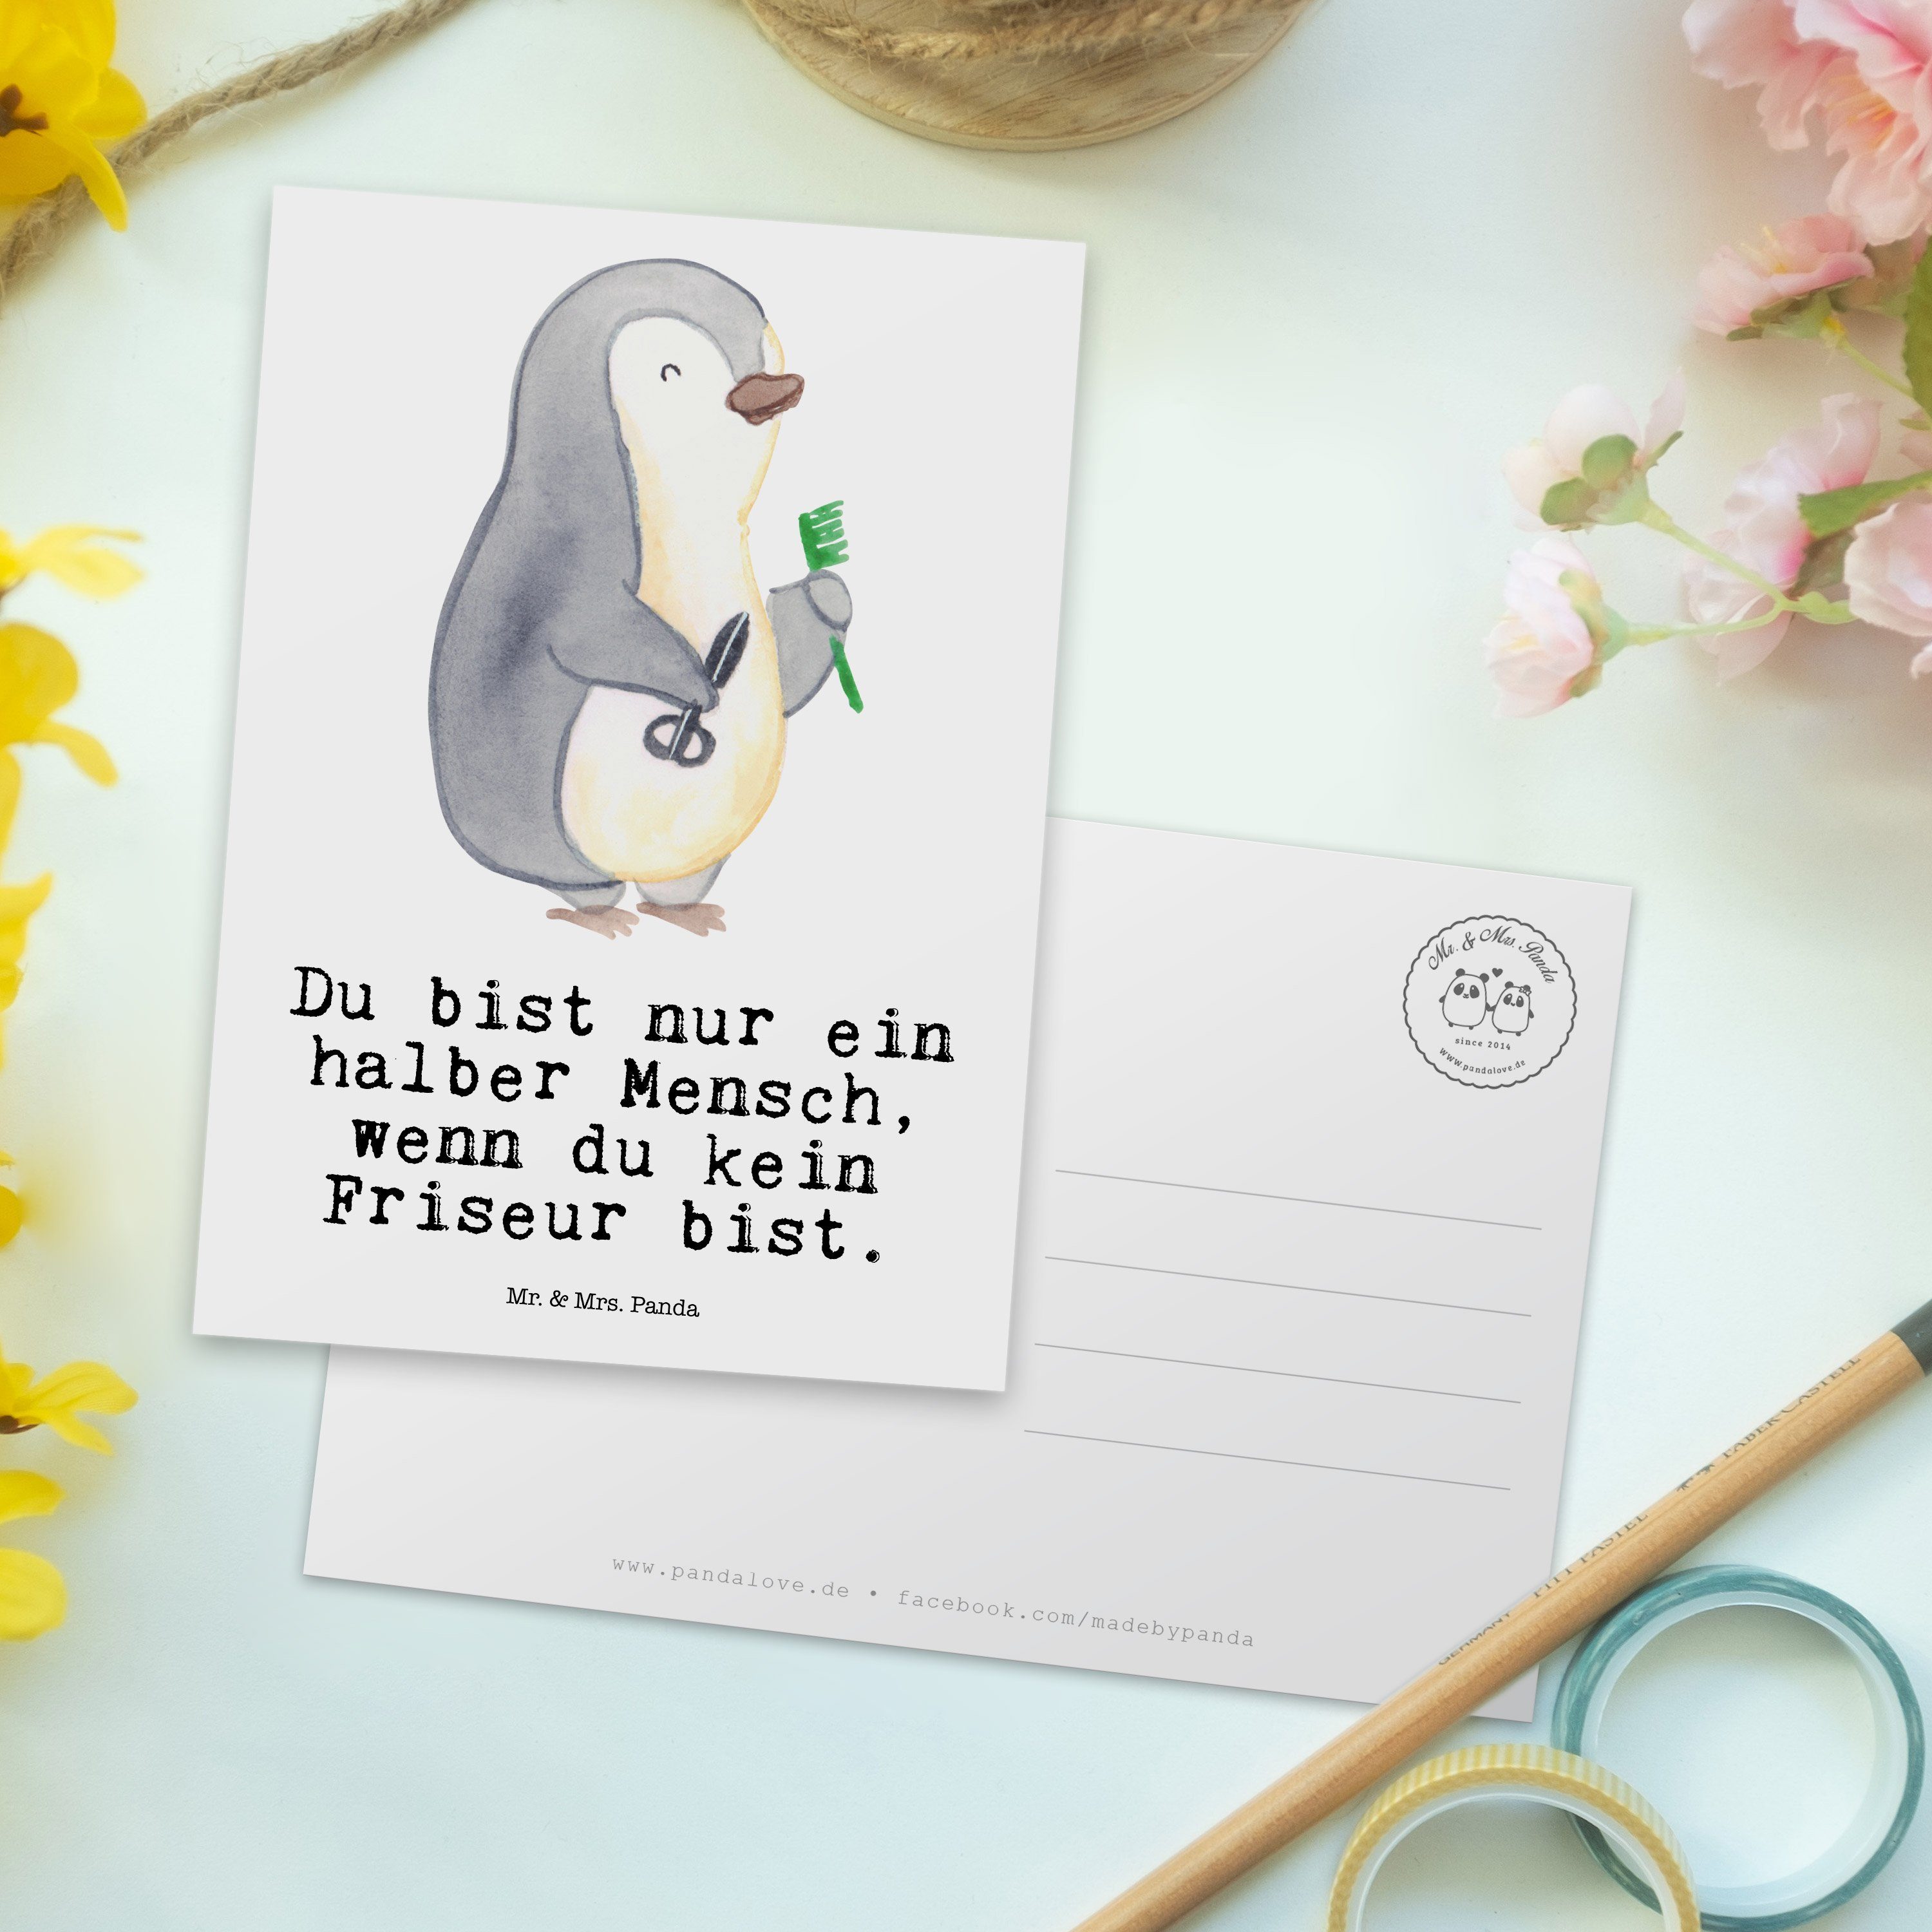 - Haarstylist, Mr. & Panda mit Friseur Arbeits Geschenk, Frisur, Herz - neue Postkarte Weiß Mrs.